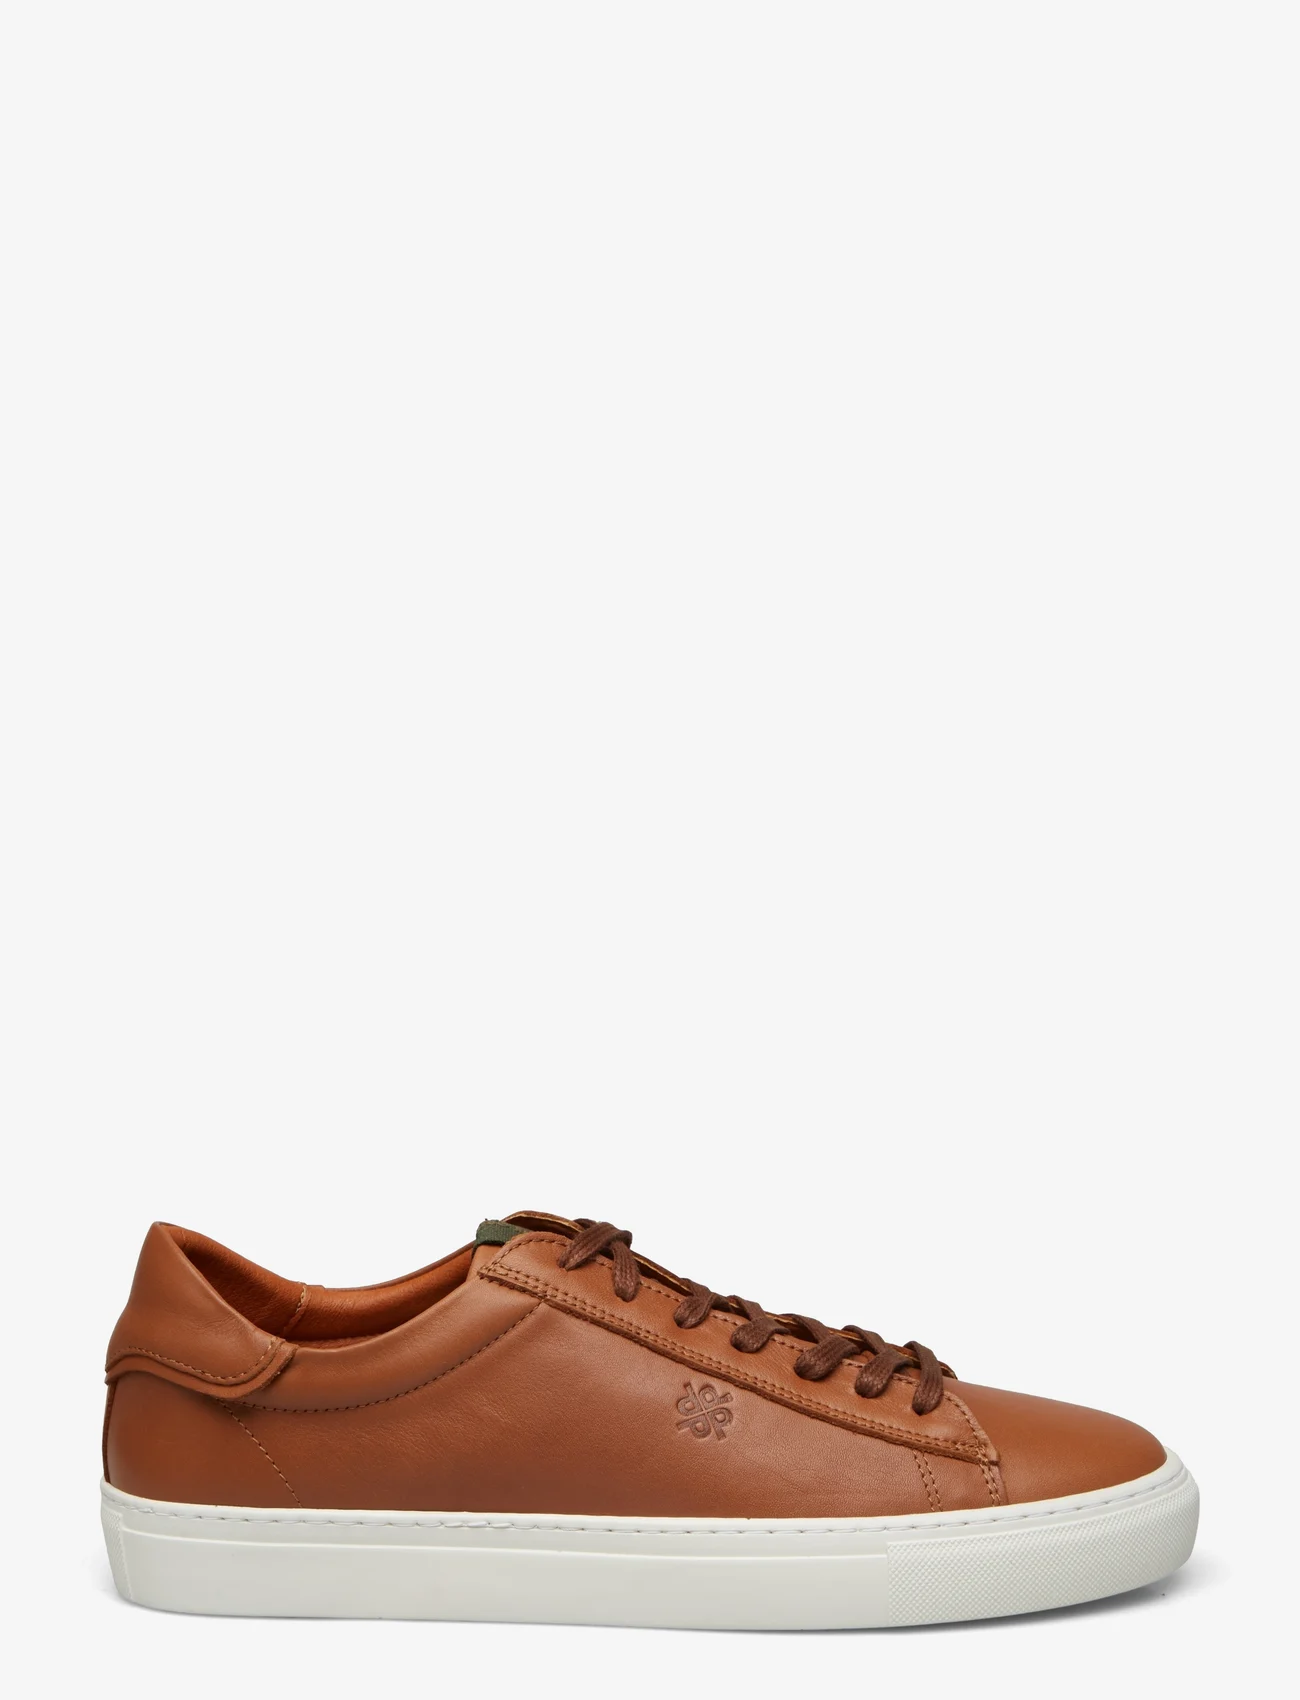 Playboy Footwear - Henri - low tops - brown leather - 1